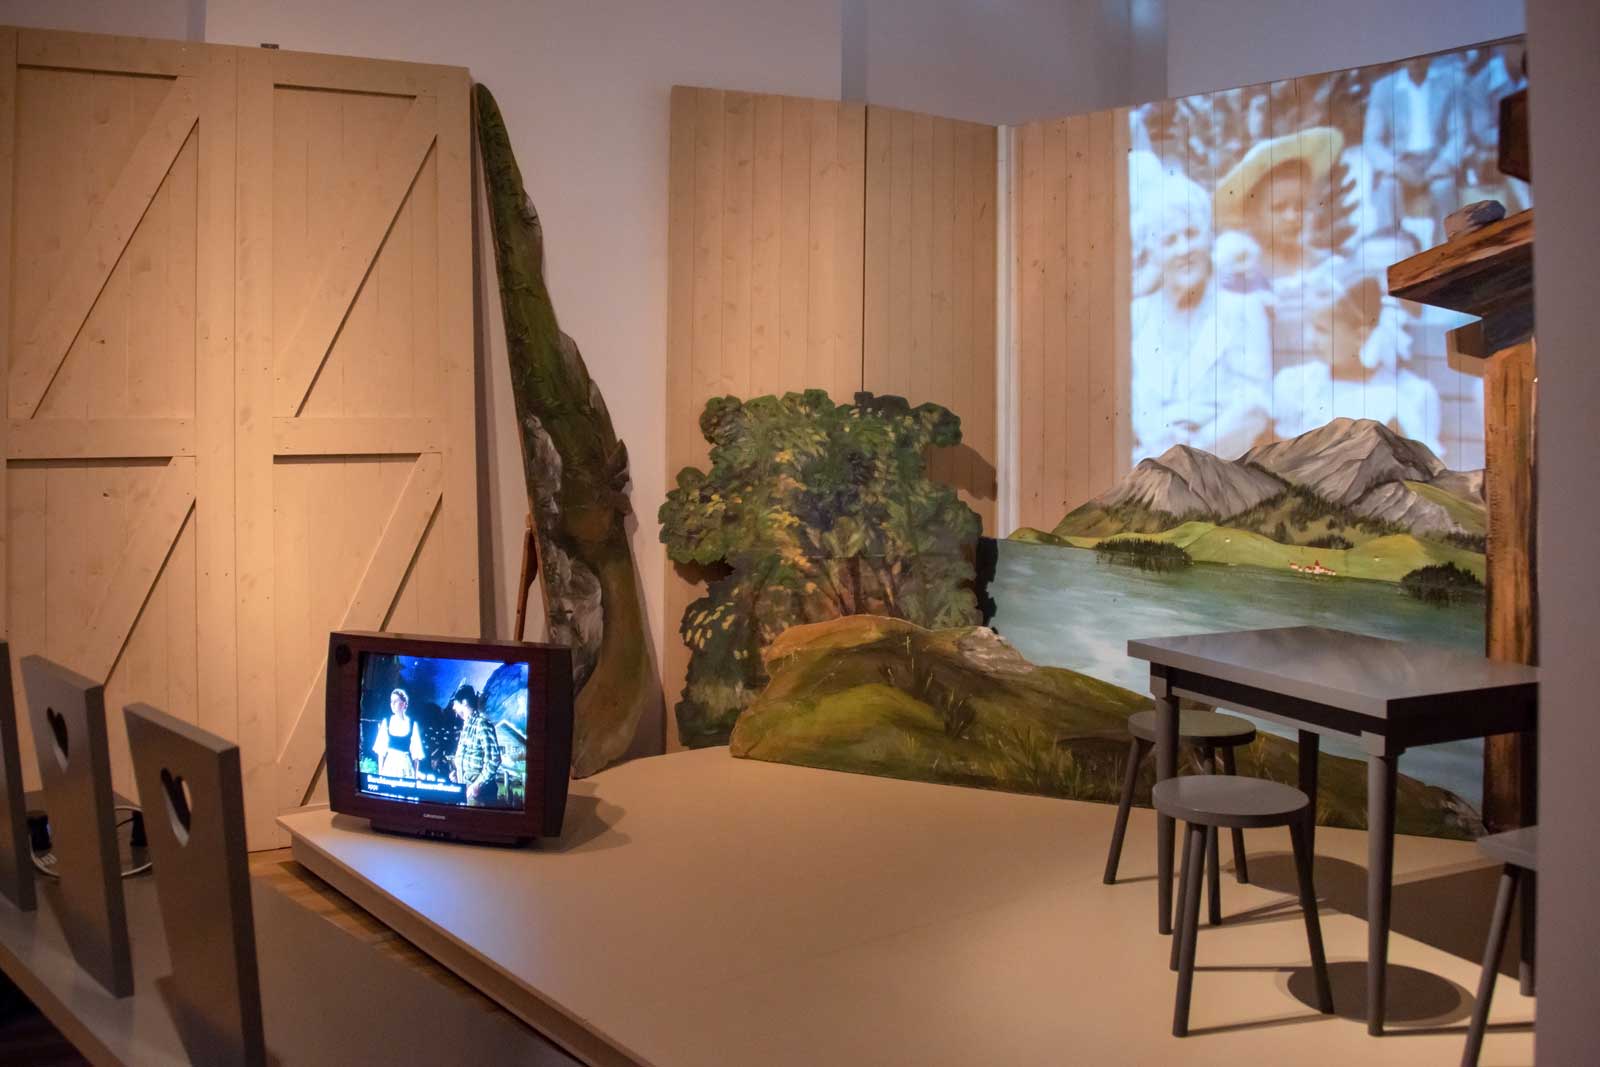 Das Referenzbild für Ausstellungsgestaltung aus der Sonderausstellung Wald, Gebirg und Königstraum – Mythos Bayern zeigt eine Medieninszenierung mit Kulissen.